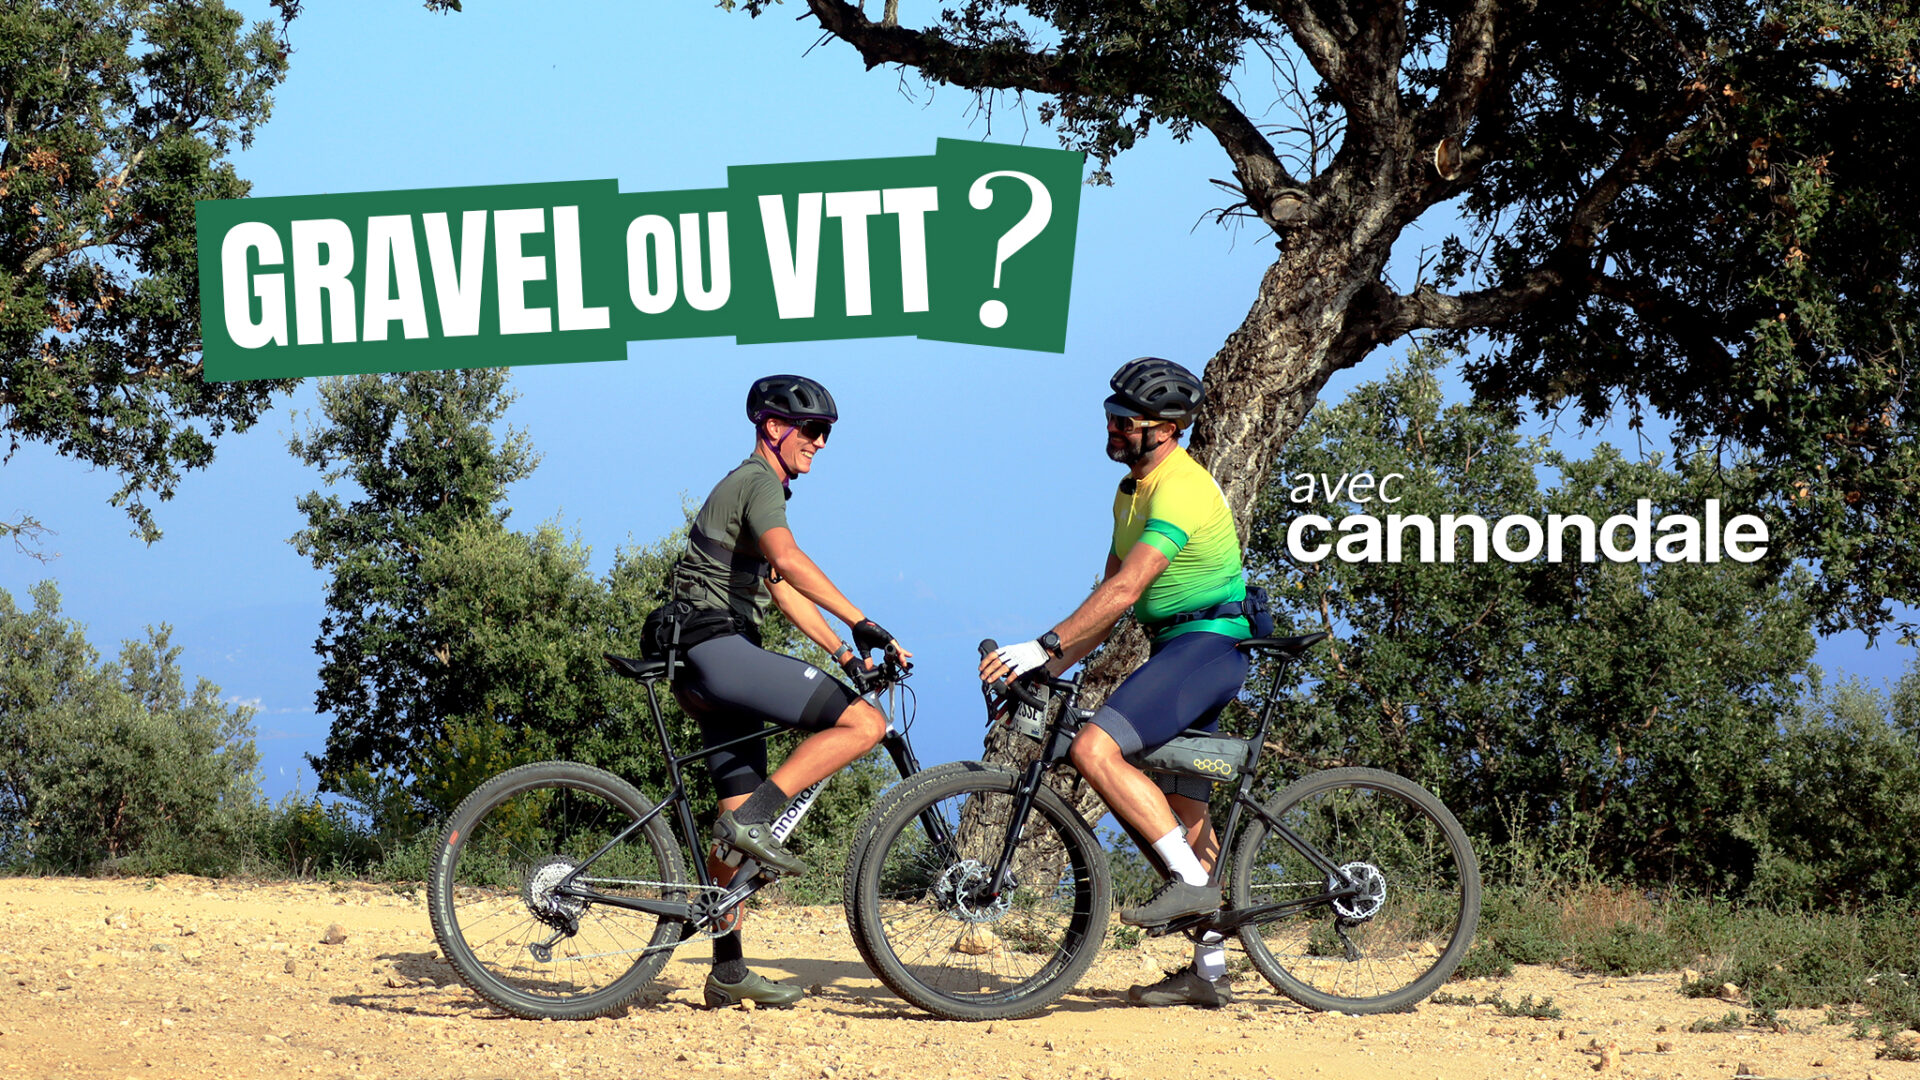 Gravel ou VTT ? On a tenté de choisir avec Cannondale au Roc d'Azur 2022